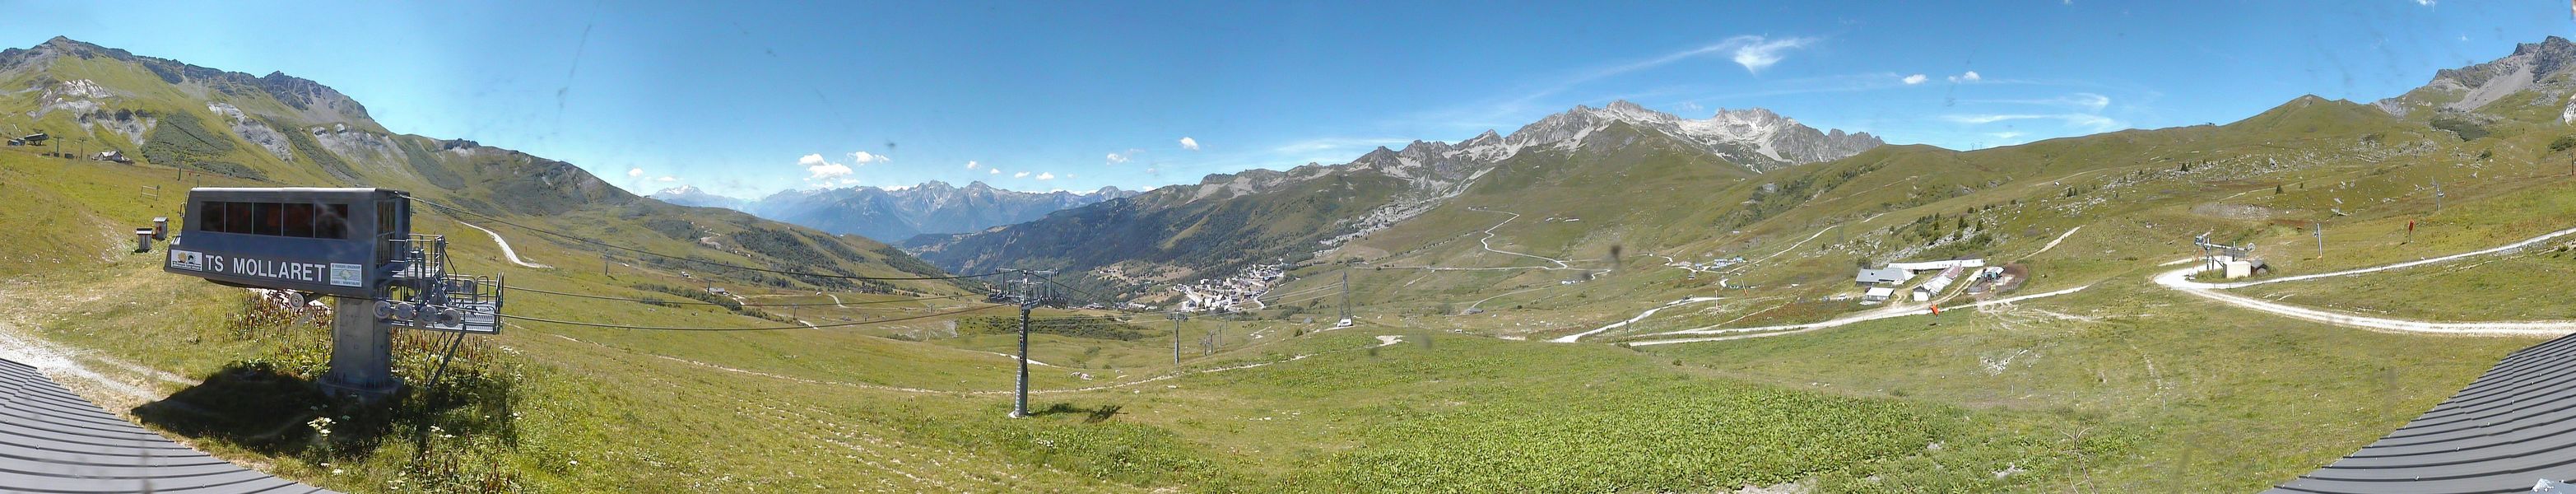 Webcam Webcam Arrivée TS Mollaret (altitude 2000m).